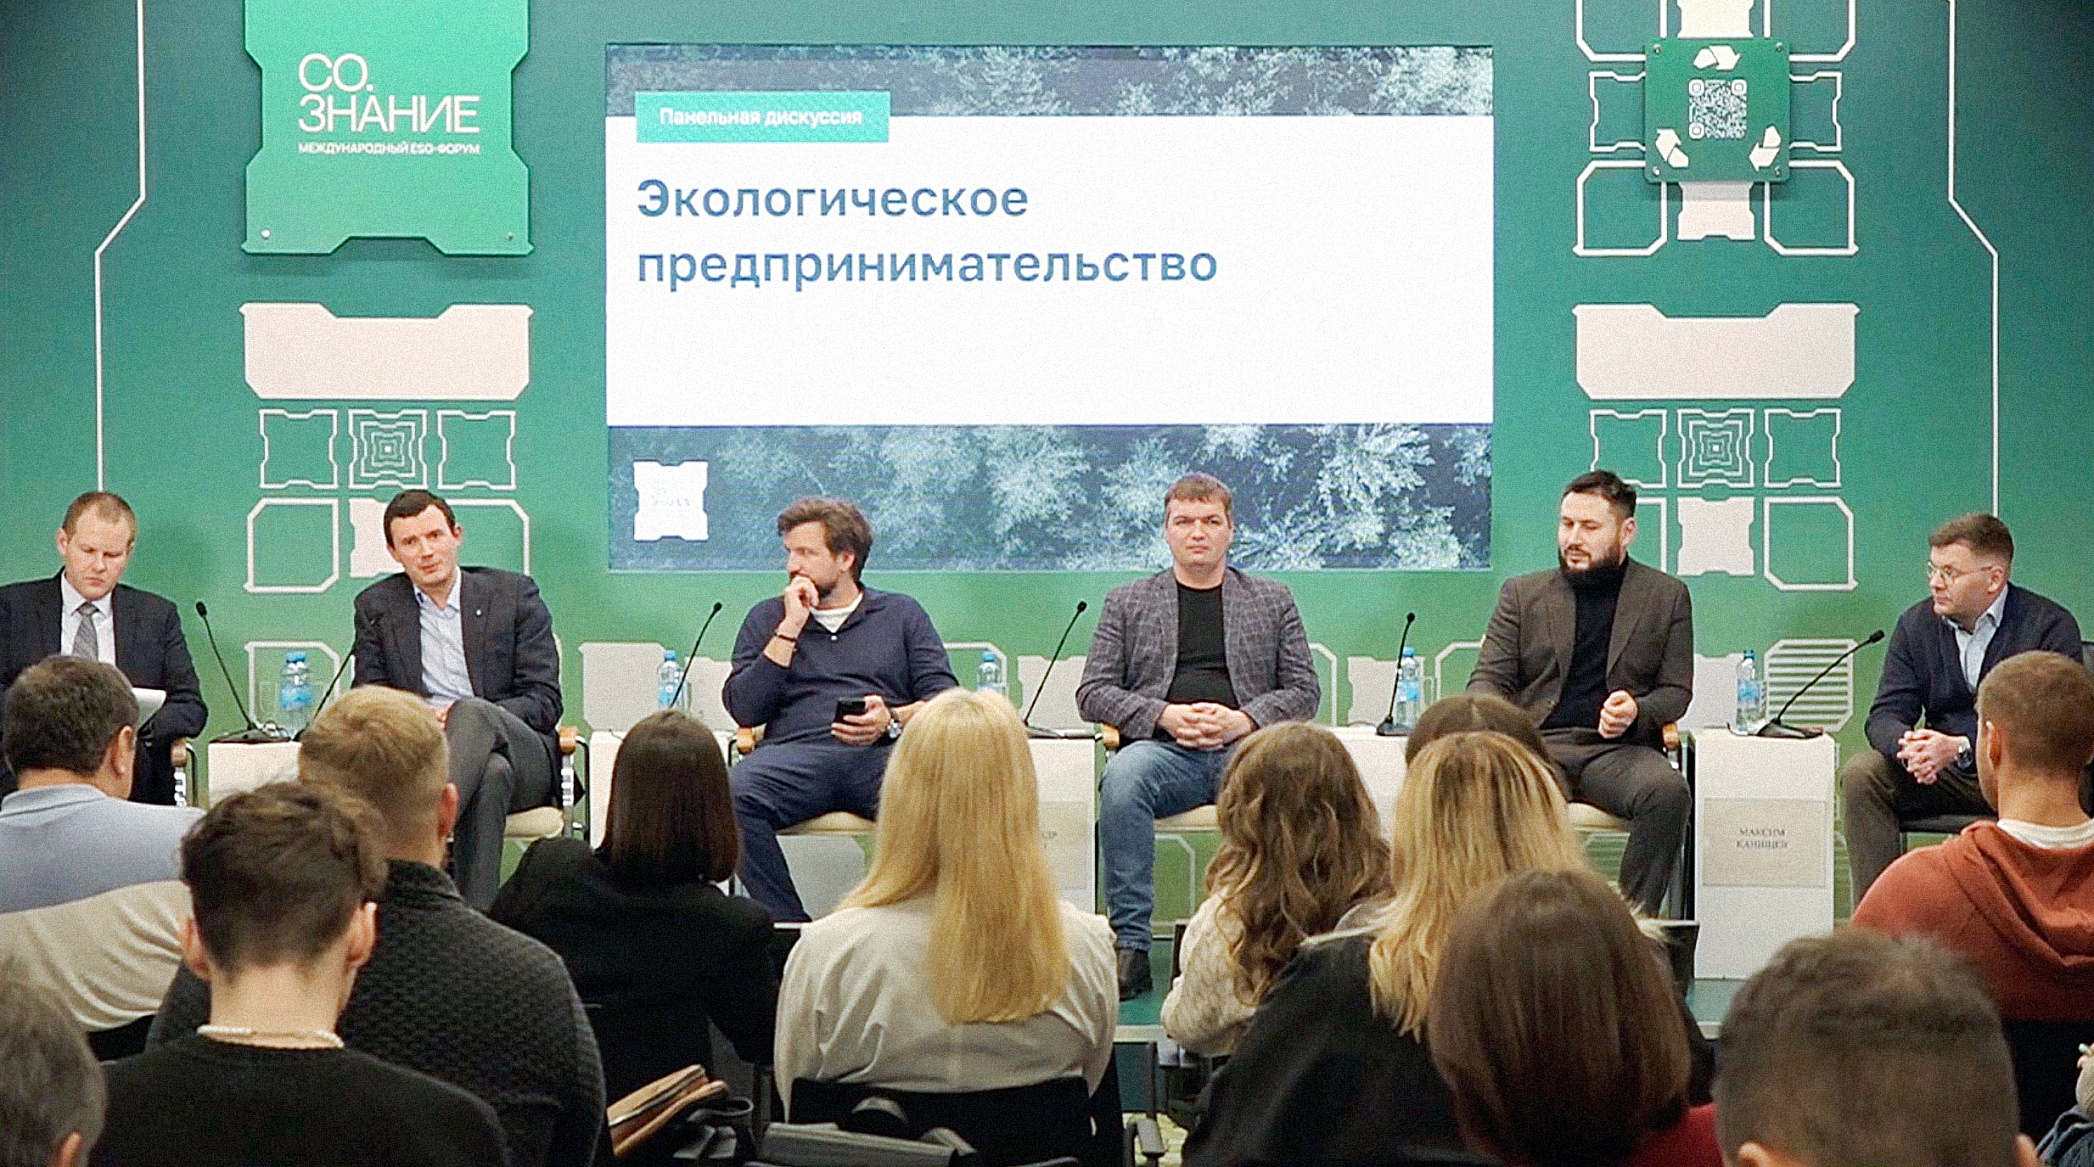 Б3 — спикер сессии «Экологическое предпринимательство» на форуме «СО.ЗНАНИЕ» в Нижнем Новгороде